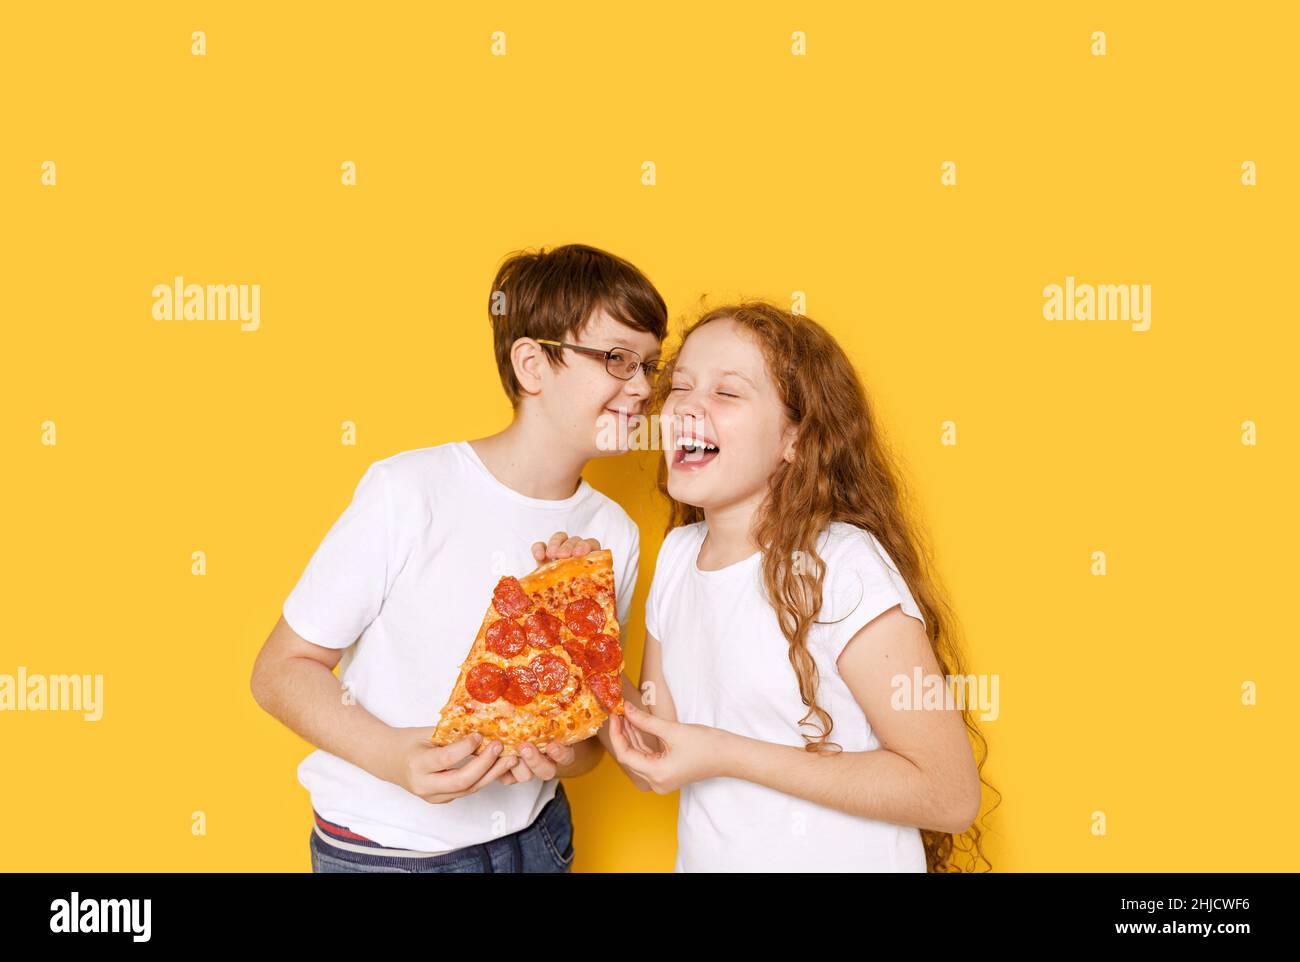 Chico y chica gracioso con pizza pepperoni sobre fondo amarillo. Feliz concepto de sonrisa saludable. Foto de stock